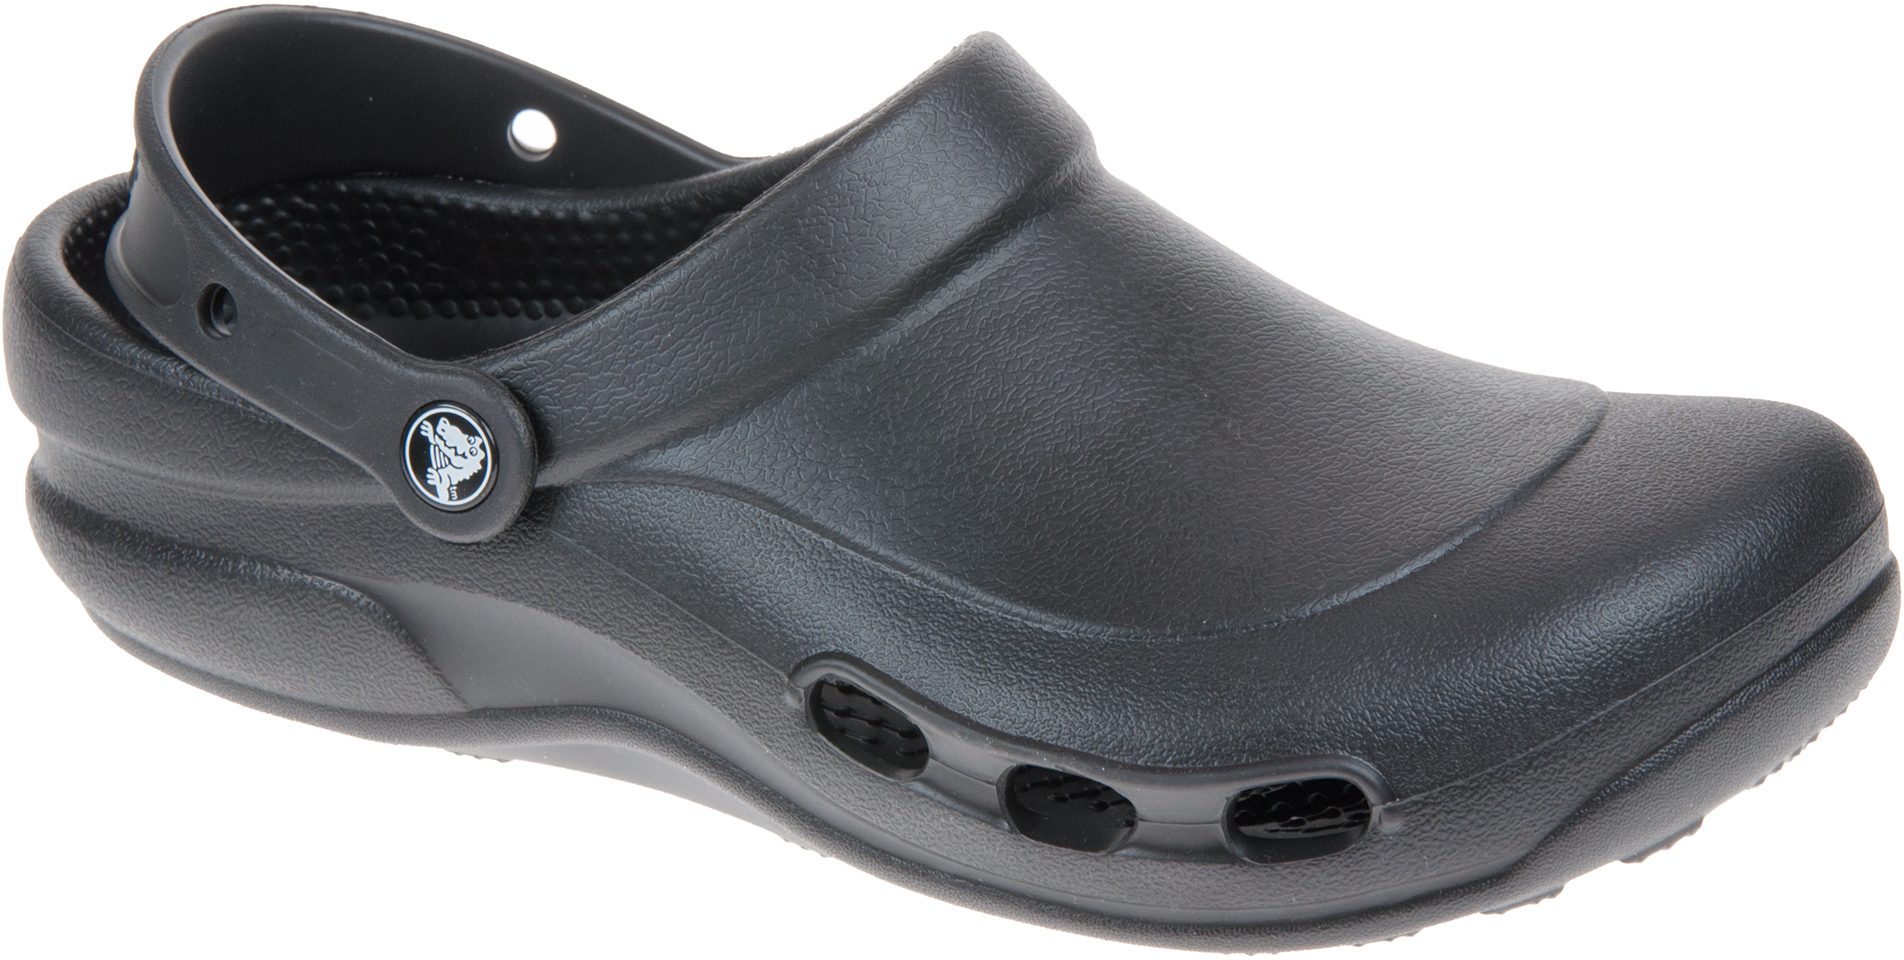 Crocs Specialist Vent Black 10074 001 - Casual Shoes - Humphries Shoes